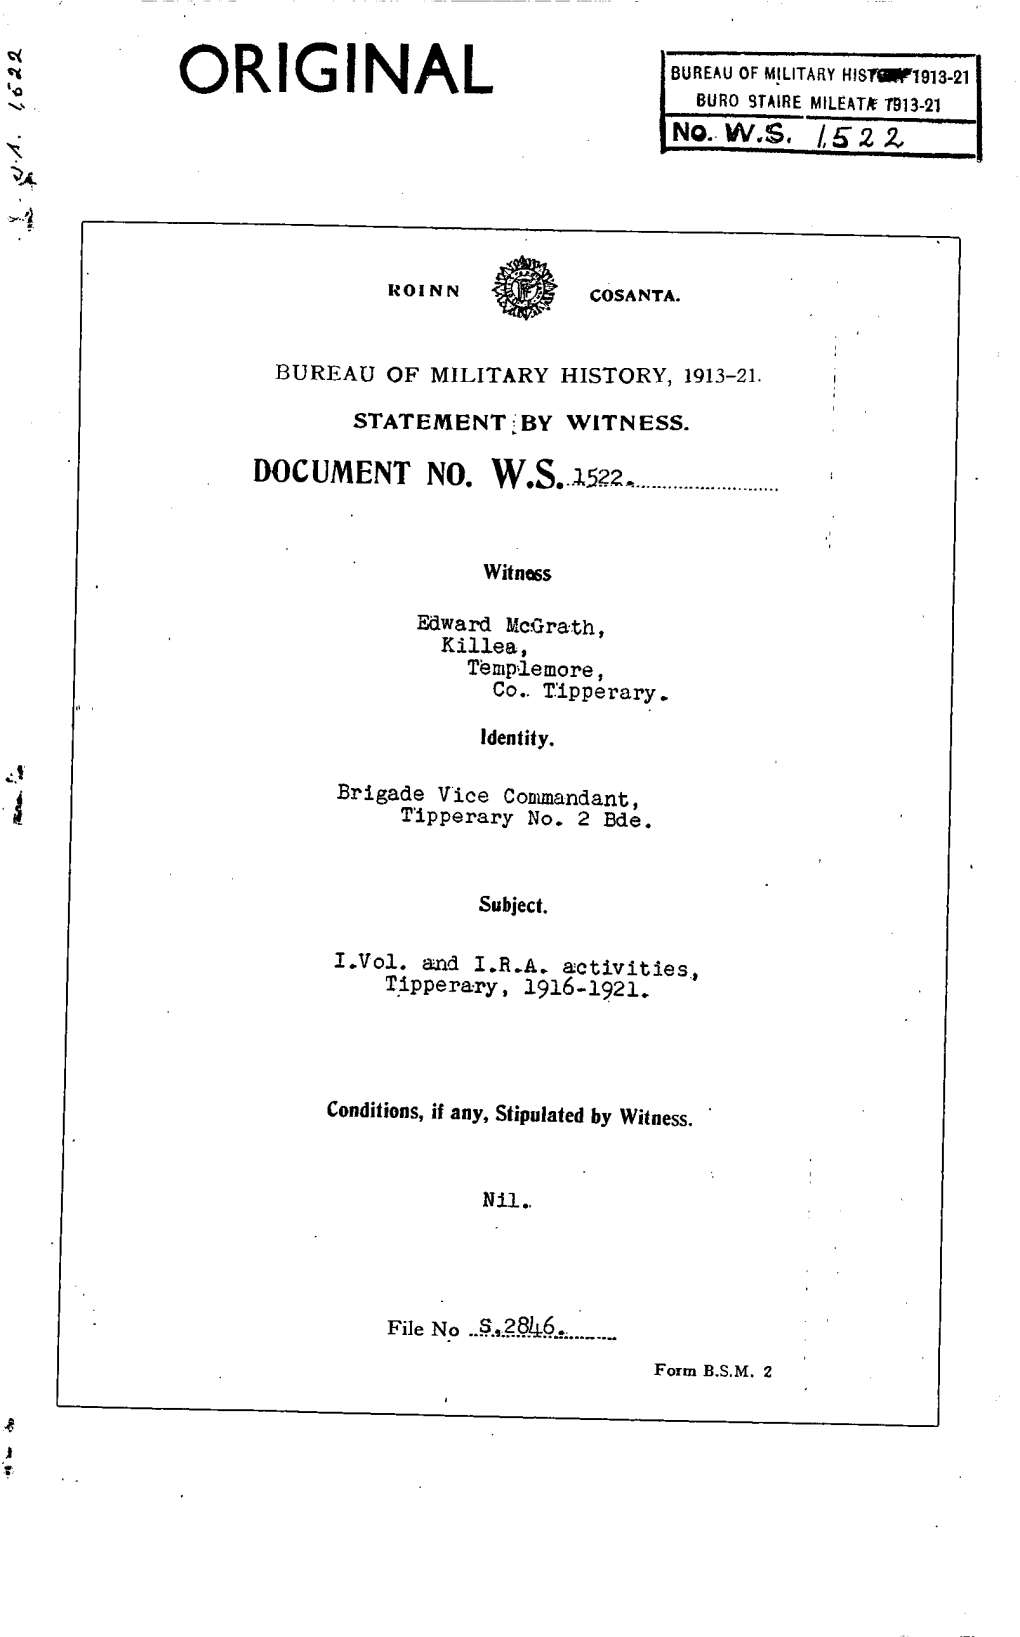 Roinn Cosanta. Bureau of Military History 1913-21